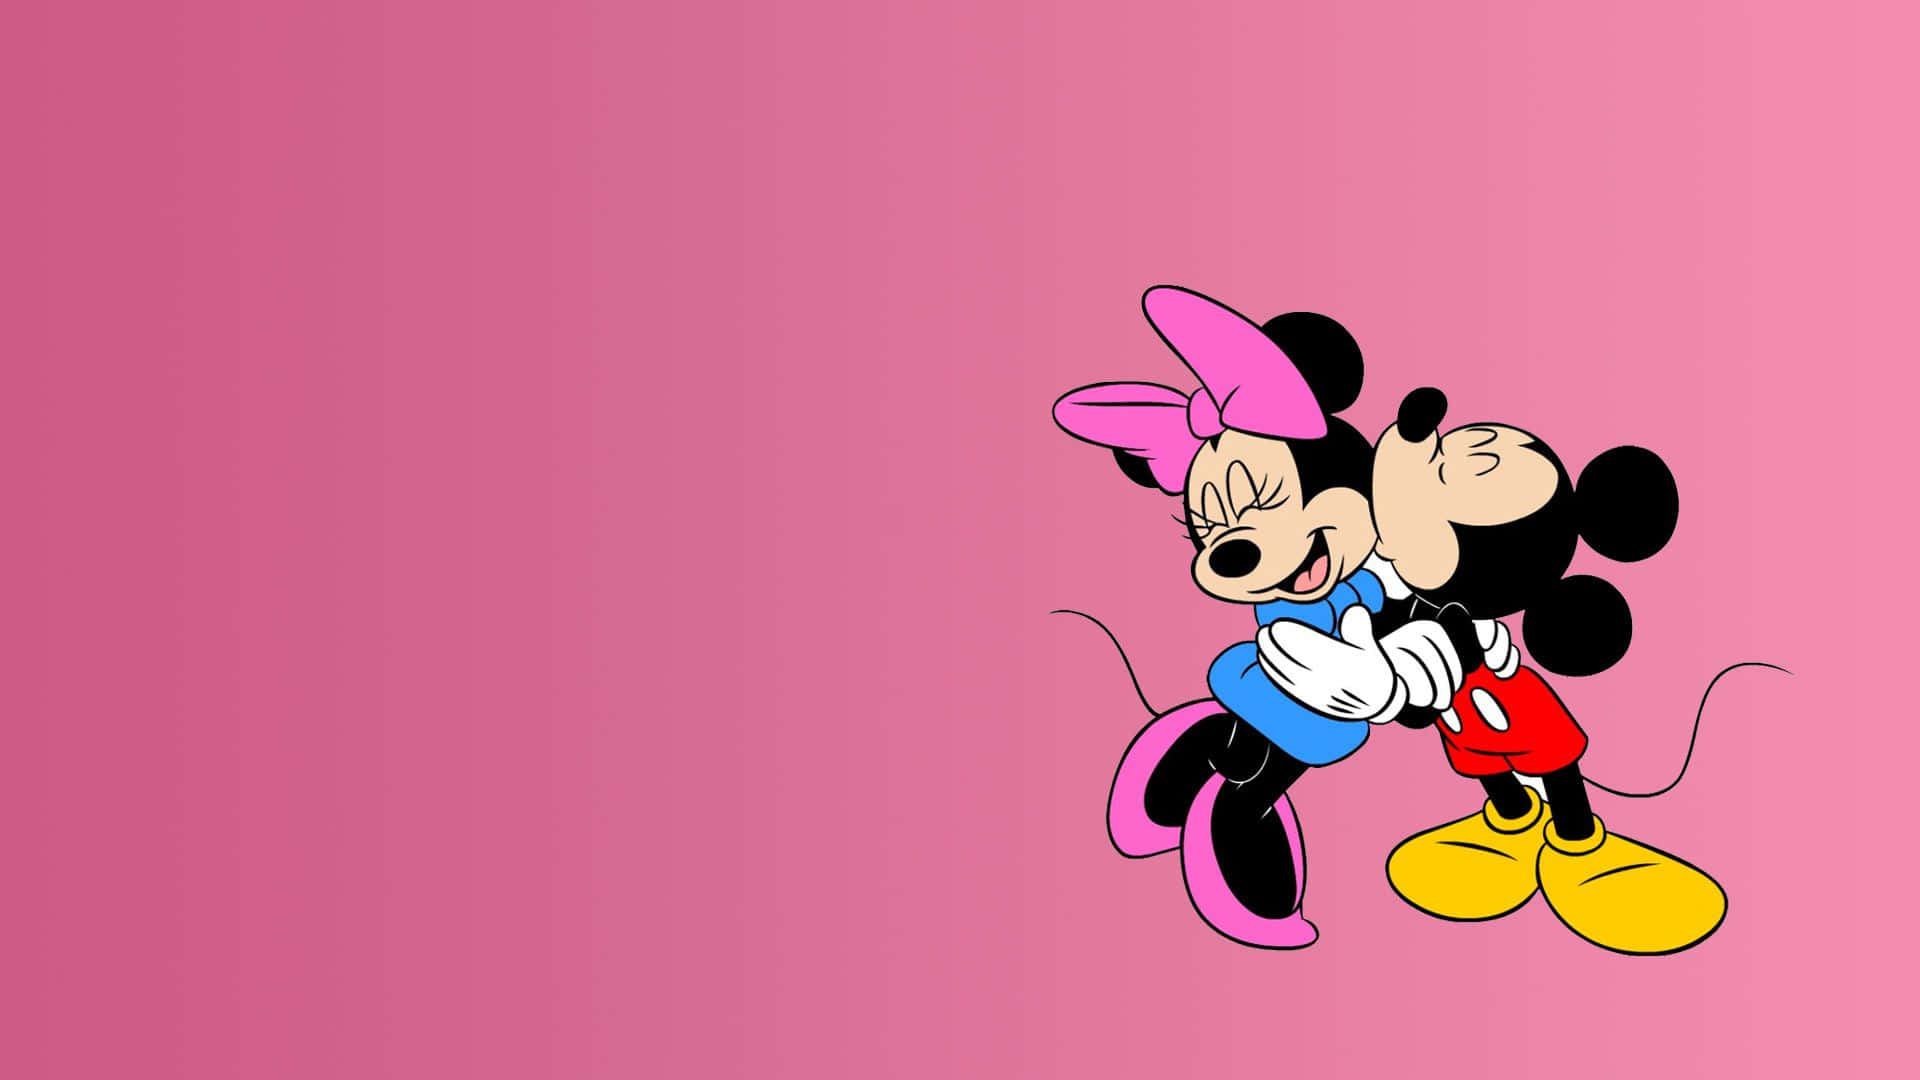 Süßwie Ein Knopf Strahlt Minnie Maus In Pink. Wallpaper